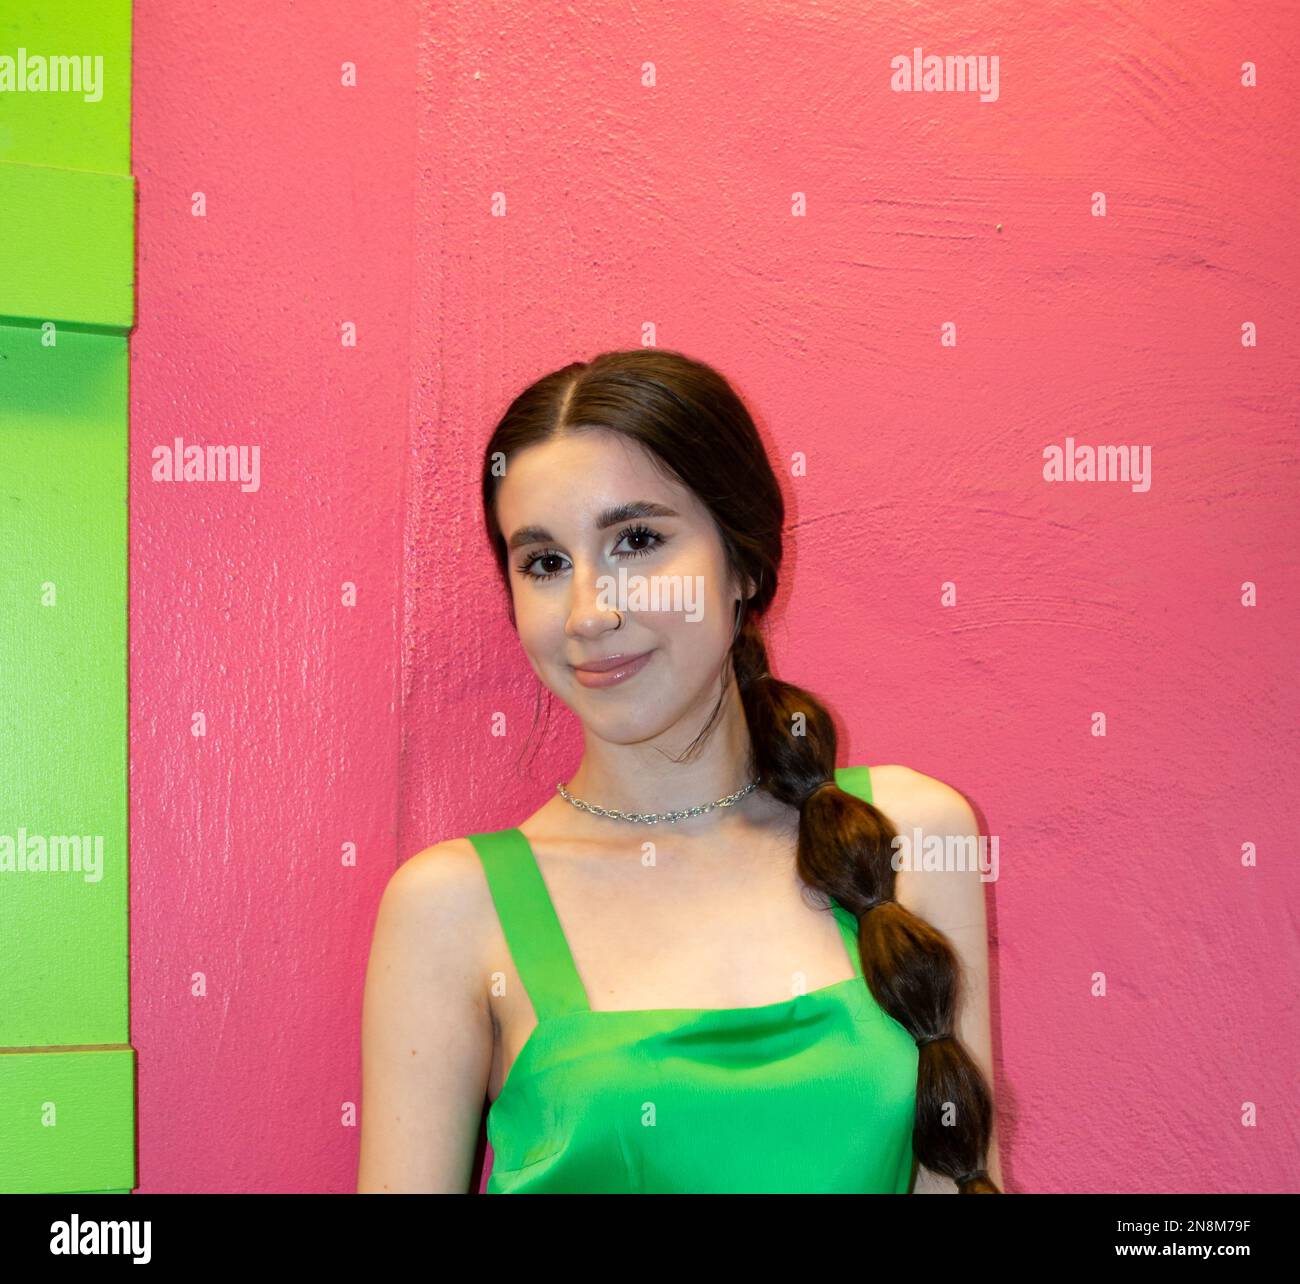 Ein 20-35-jähriges Mädchen, das ein grünes Kleid trägt und draußen an einer rosa Wand steht Stockfoto